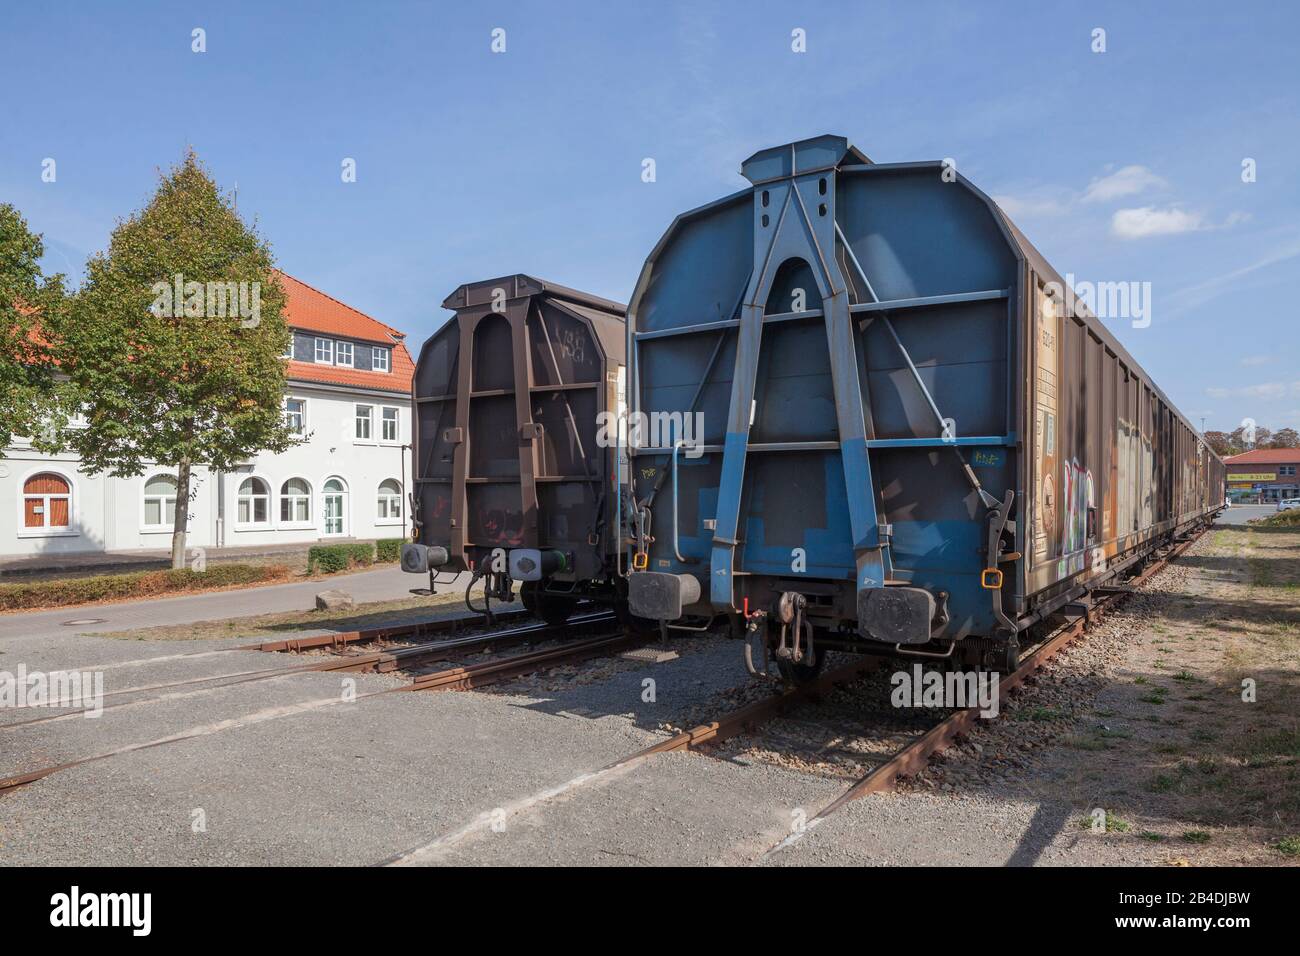 Alte Güterwaggons am Bahnhof, Hoya, Niedersachsen, Deutschland, Europa Stock Photo